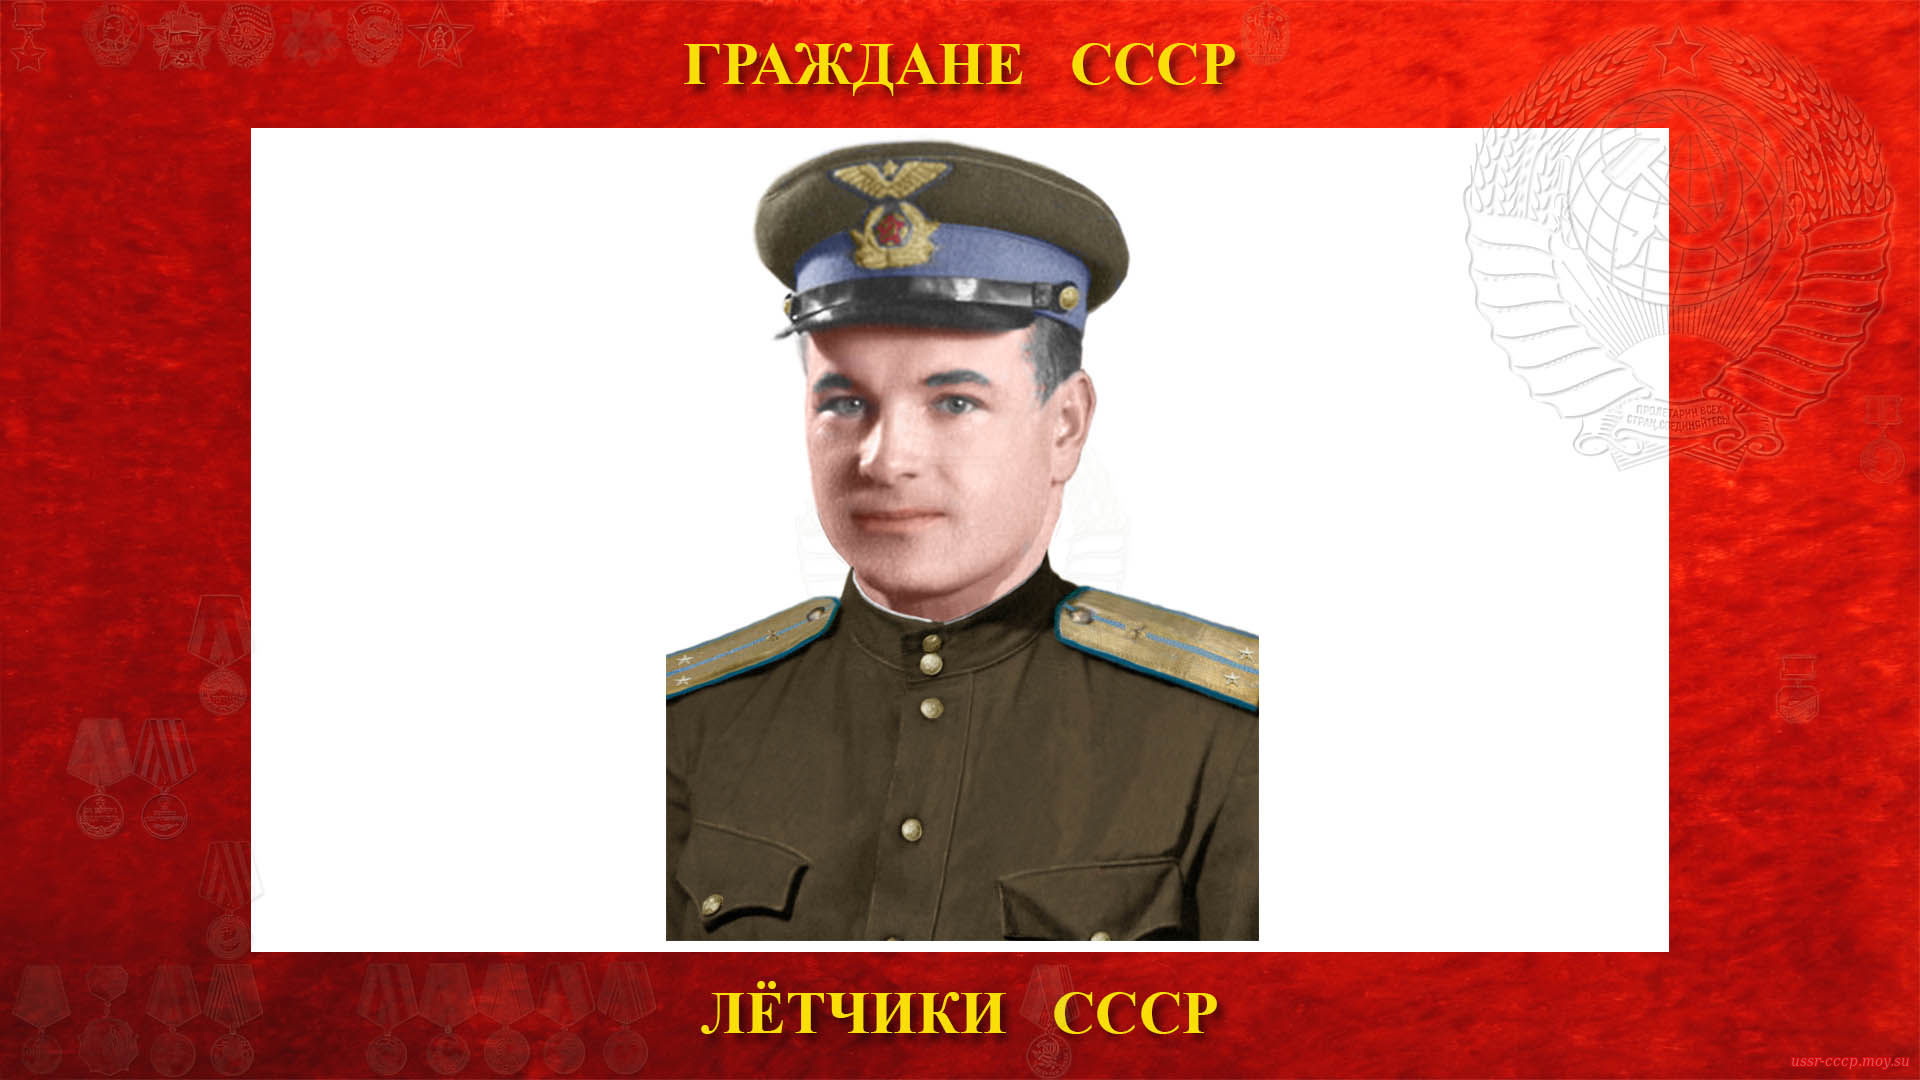 Михайлов Павел Михайлович — Советский лётчик СССР — Герой Советского Союза